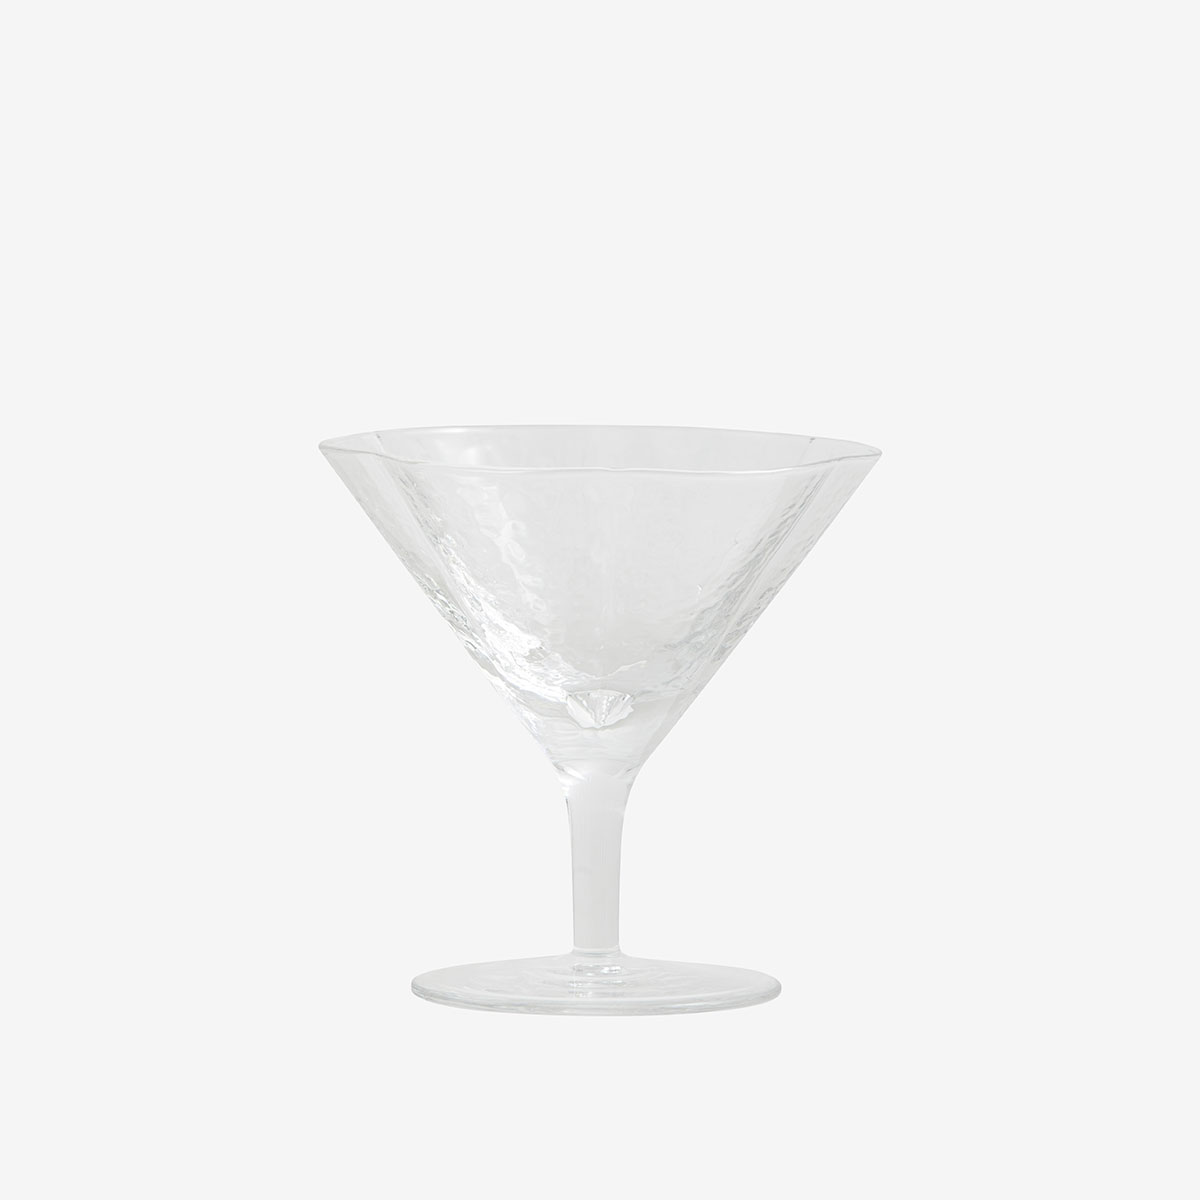 Cocktailglass i klart glass fra Nordal